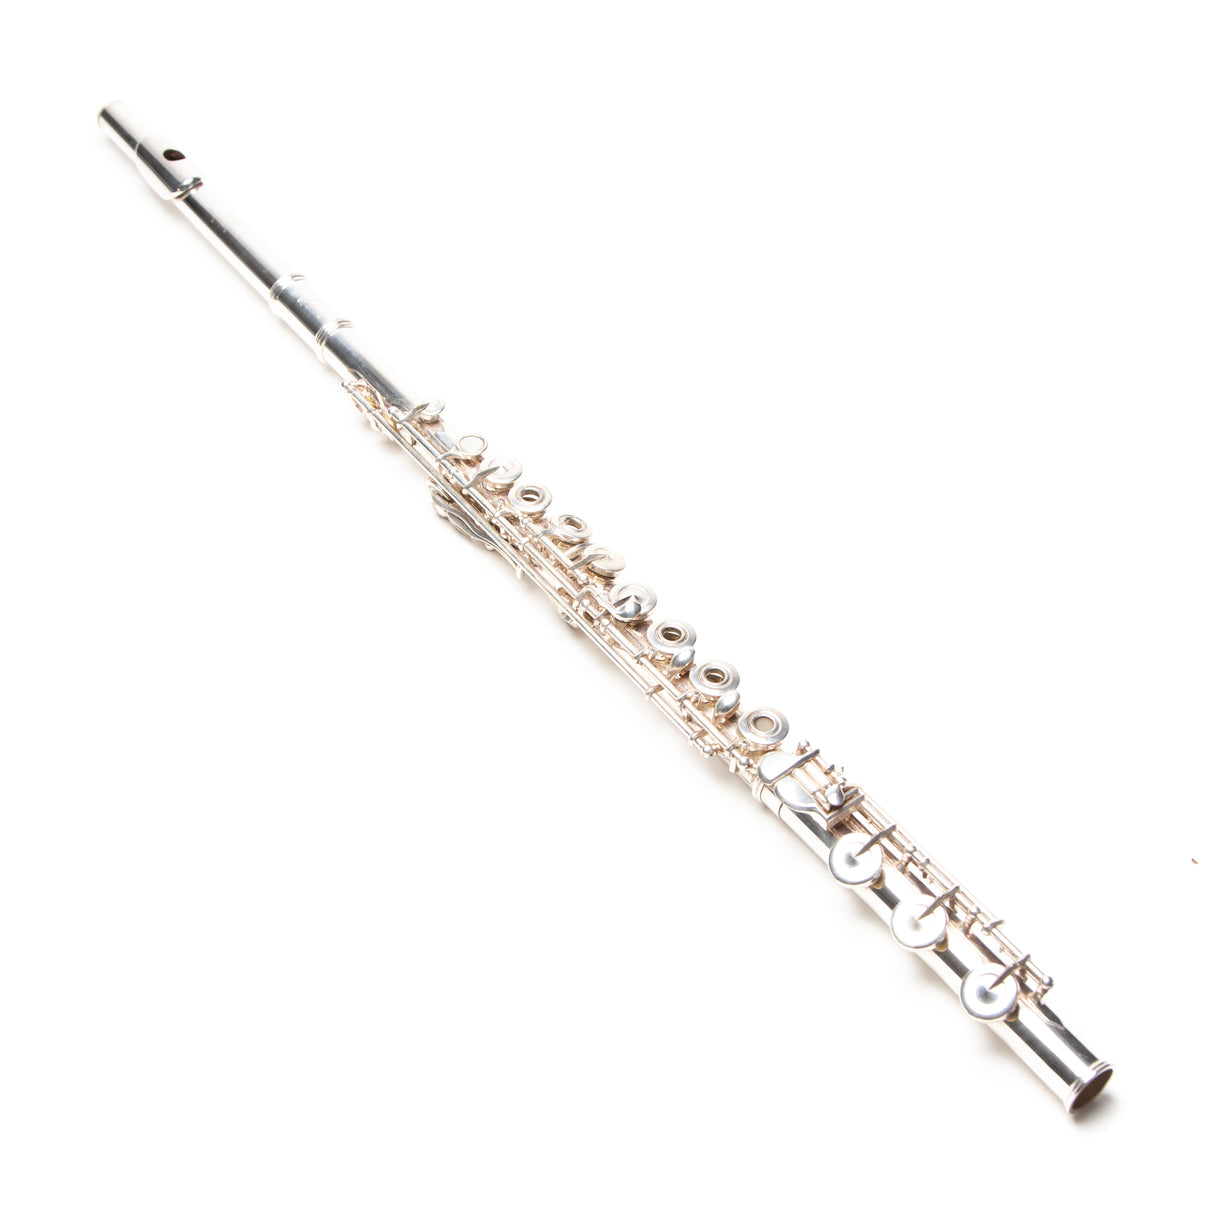 Gemeinhardt 33SB Professional Boehm Flute